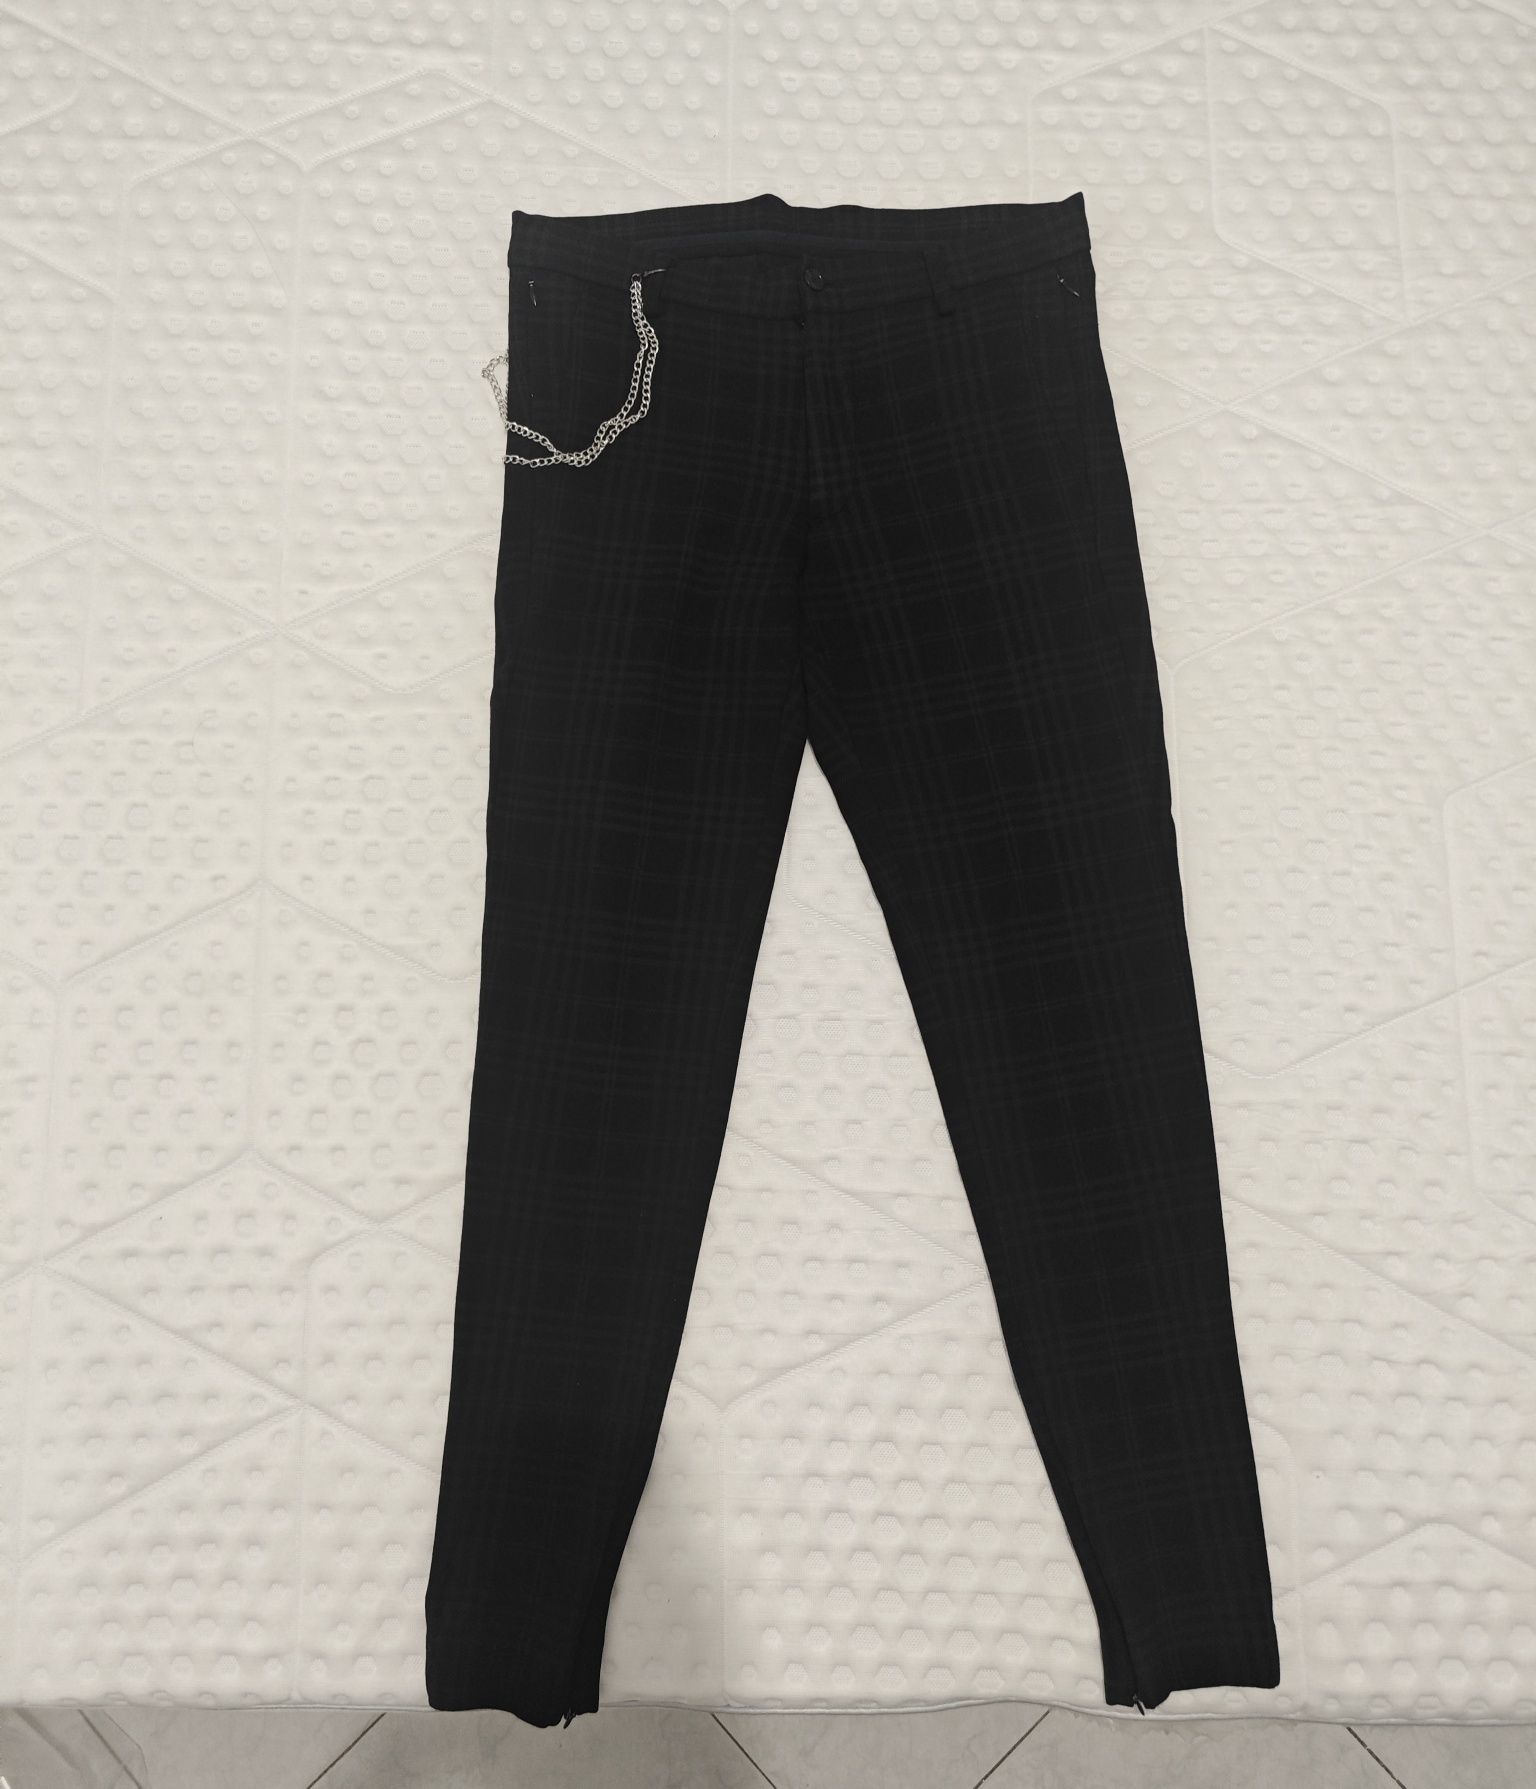 Calças 38 tecido pretas xadrez elásticas Zara slim fit